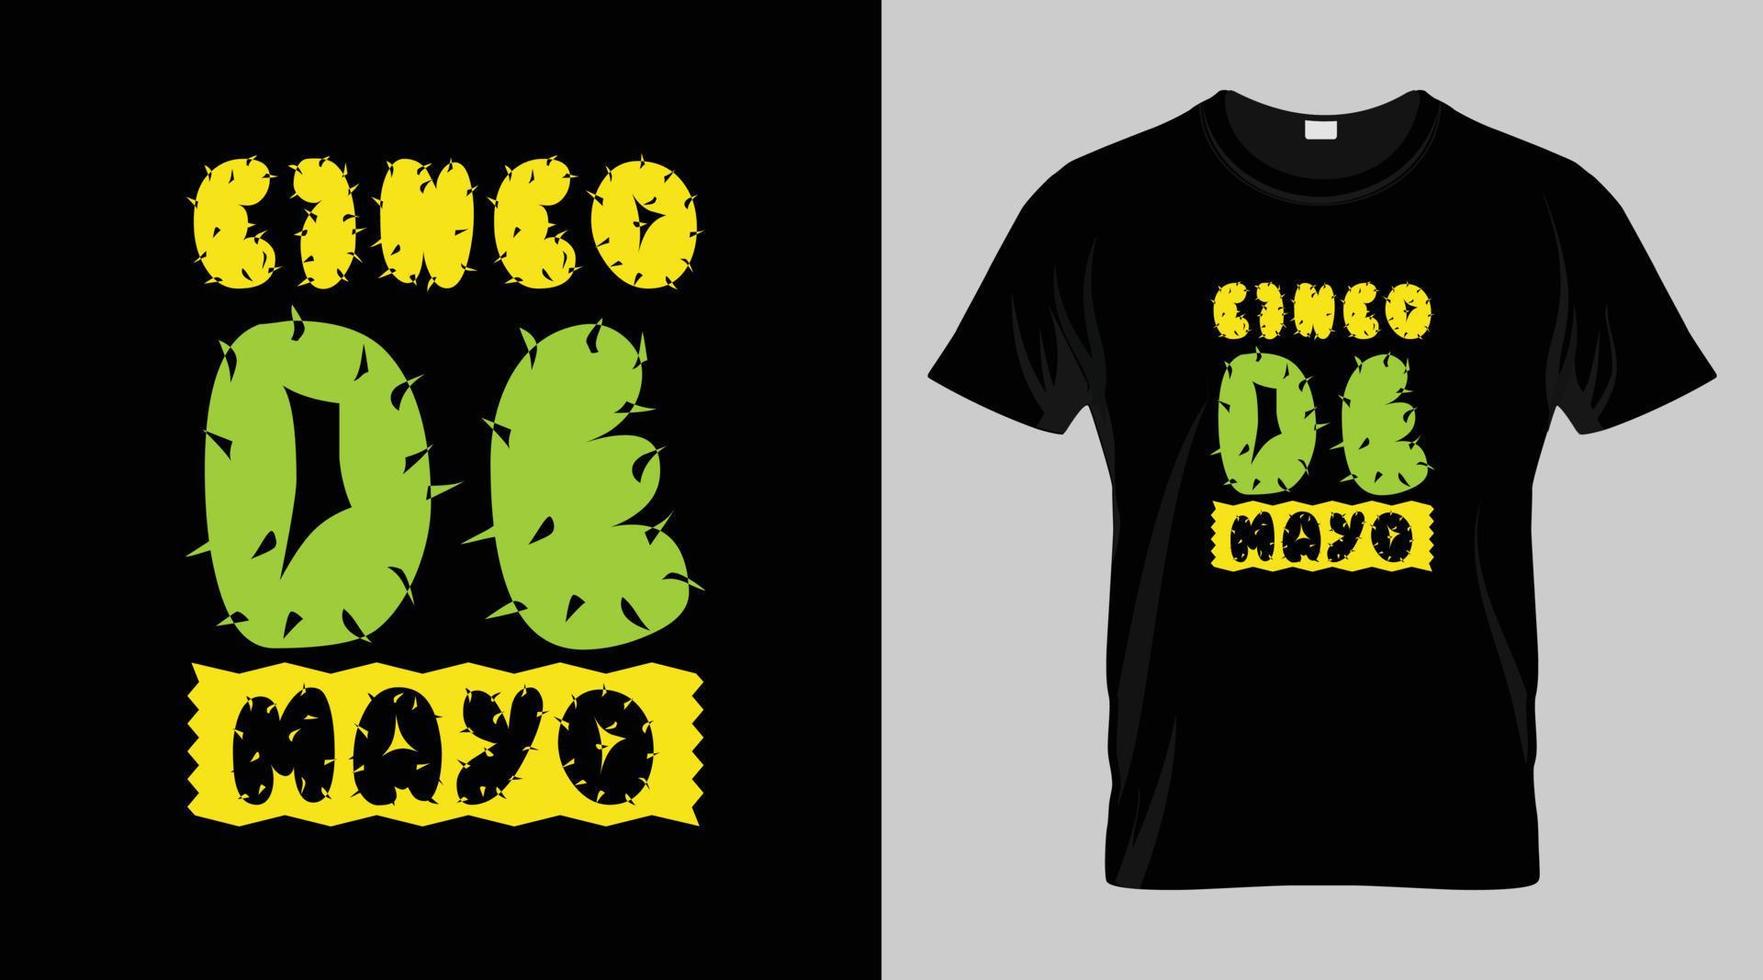 cinco Delaware mayonesa festival camiseta diseño, mexicano festival vector camiseta diseño